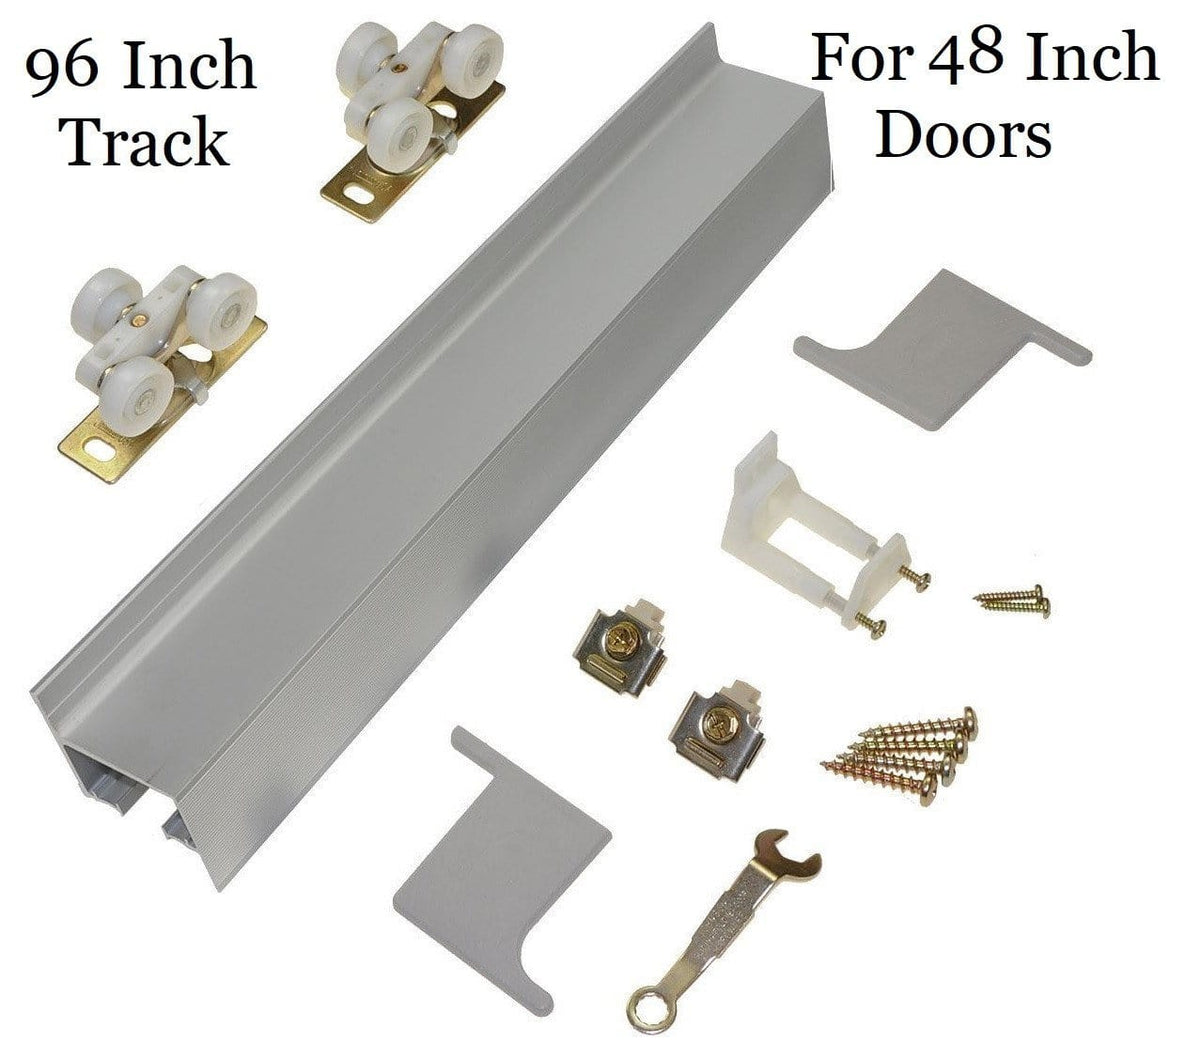 Barn Door Hardware - Modern Aluminum - 96 Inch Track For 48 Inch Doors